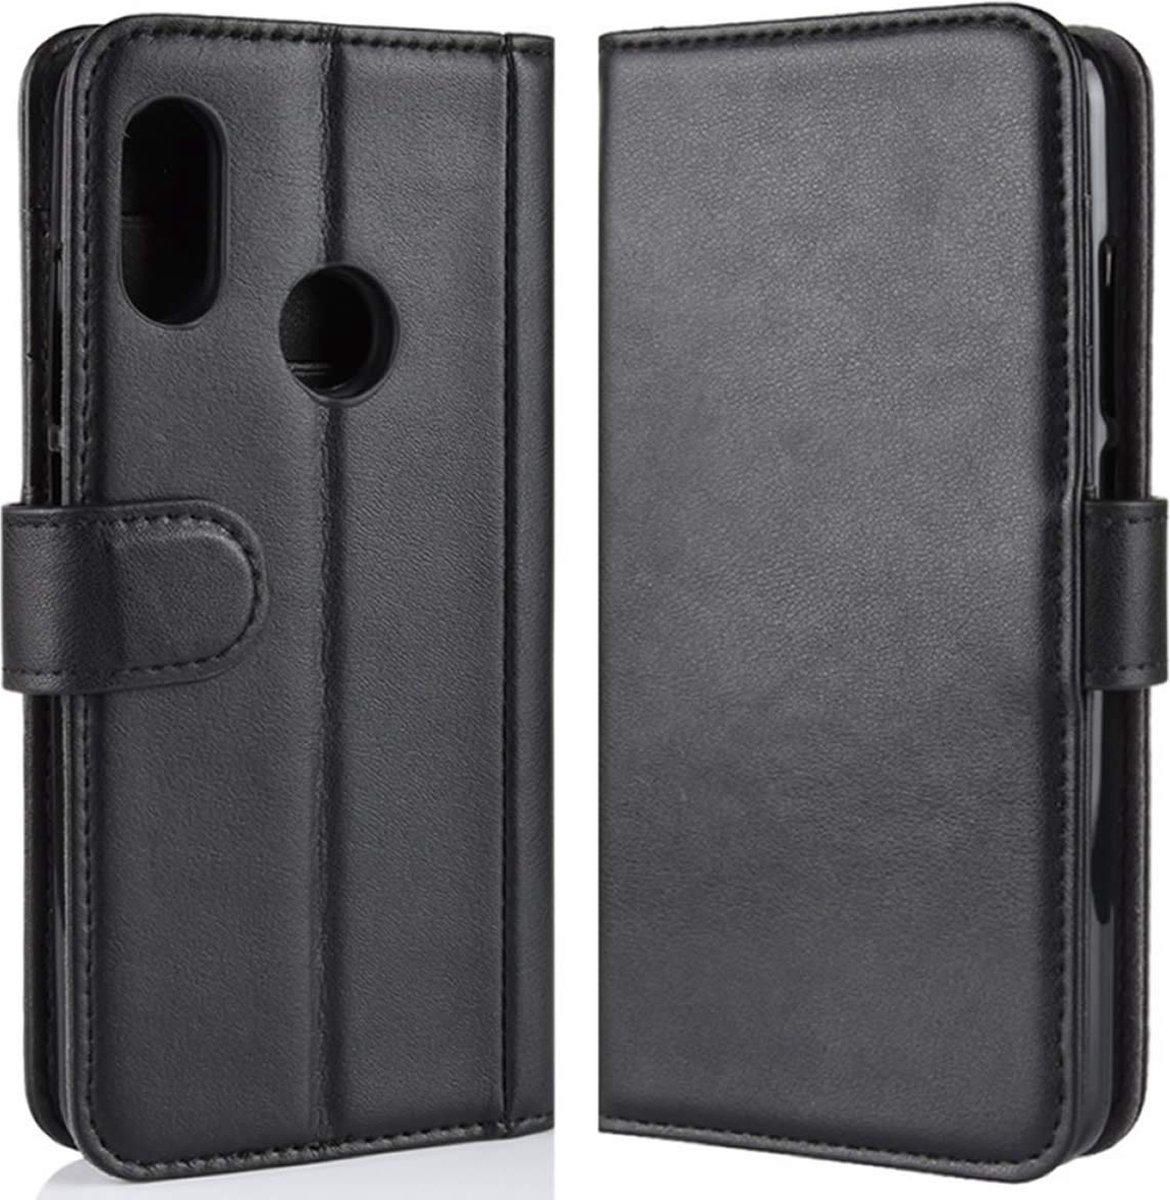 Just in Case Xiaomi Mi A2 Lite Wallet Case (Black)